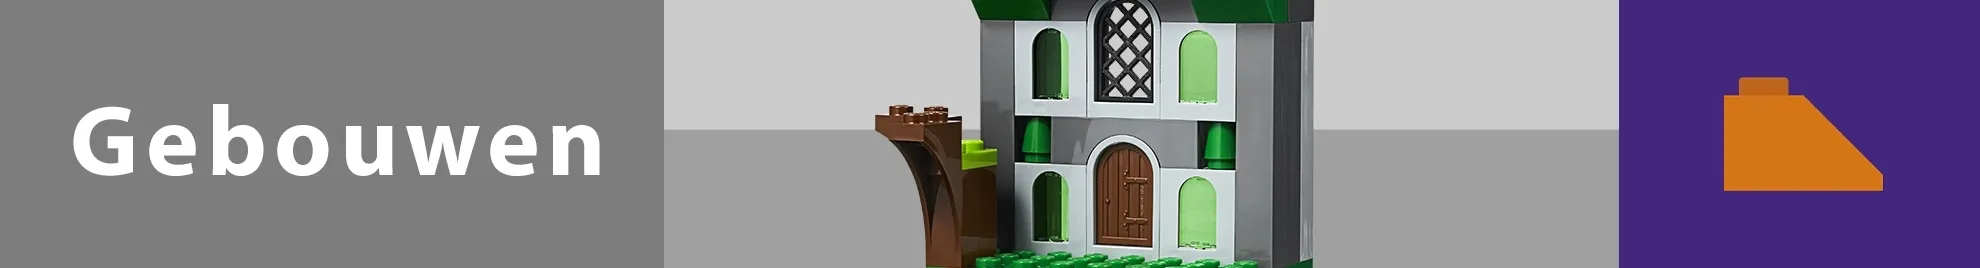 LEGO gebouwen banner